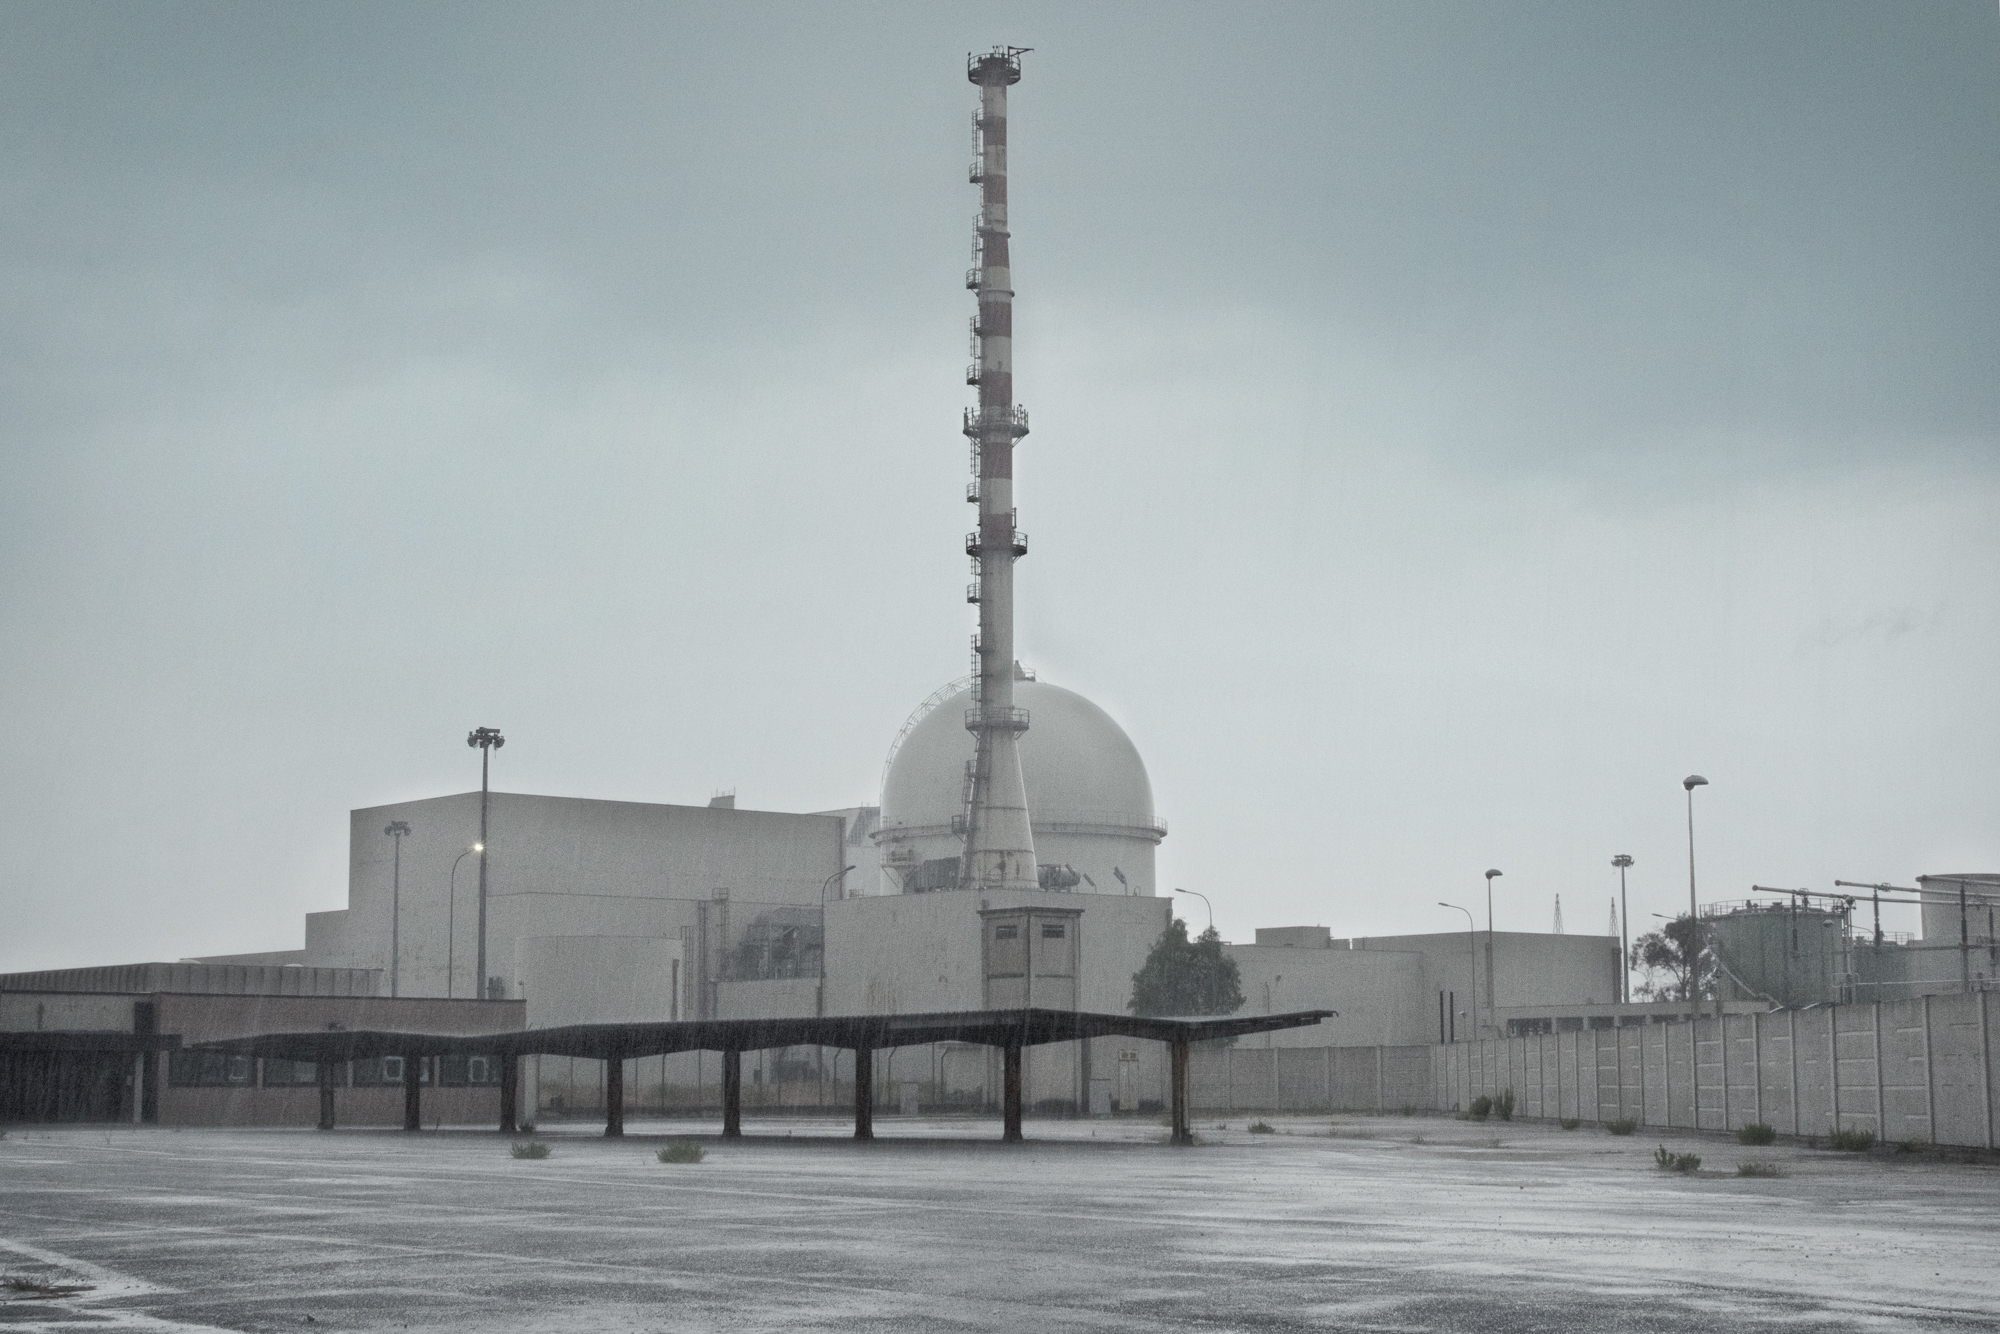  Copula del reattore nucleare a nebbia CIRENE, Borgo Sabotino (LT),  Il CISE REatttore nucleare a NEbbia è un progetto di reattore nucleare completamente sviluppato in Italia.&nbsp; Un primo prototipo, basato sull’uso di uranio naturale come combusti